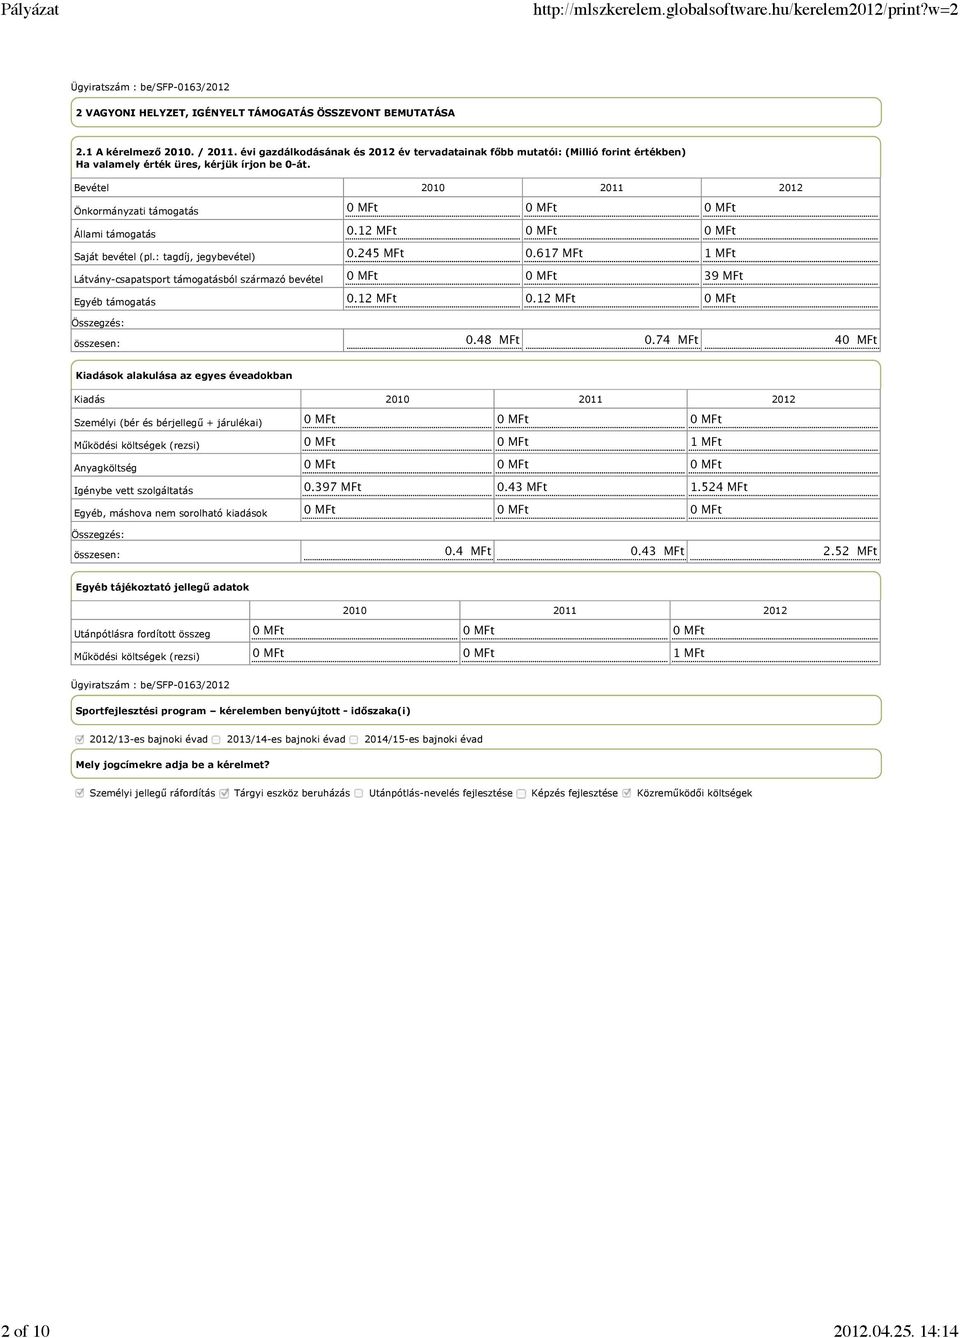 Bevétel 2010 2011 2012 Önkormányzati támogatás Állami támogatás Saját bevétel (pl.: tagdíj, jegybevétel) Látvány-csapatsport támogatásból származó bevétel Egyéb támogatás 0 MFt 0 MFt 0 MFt 0.